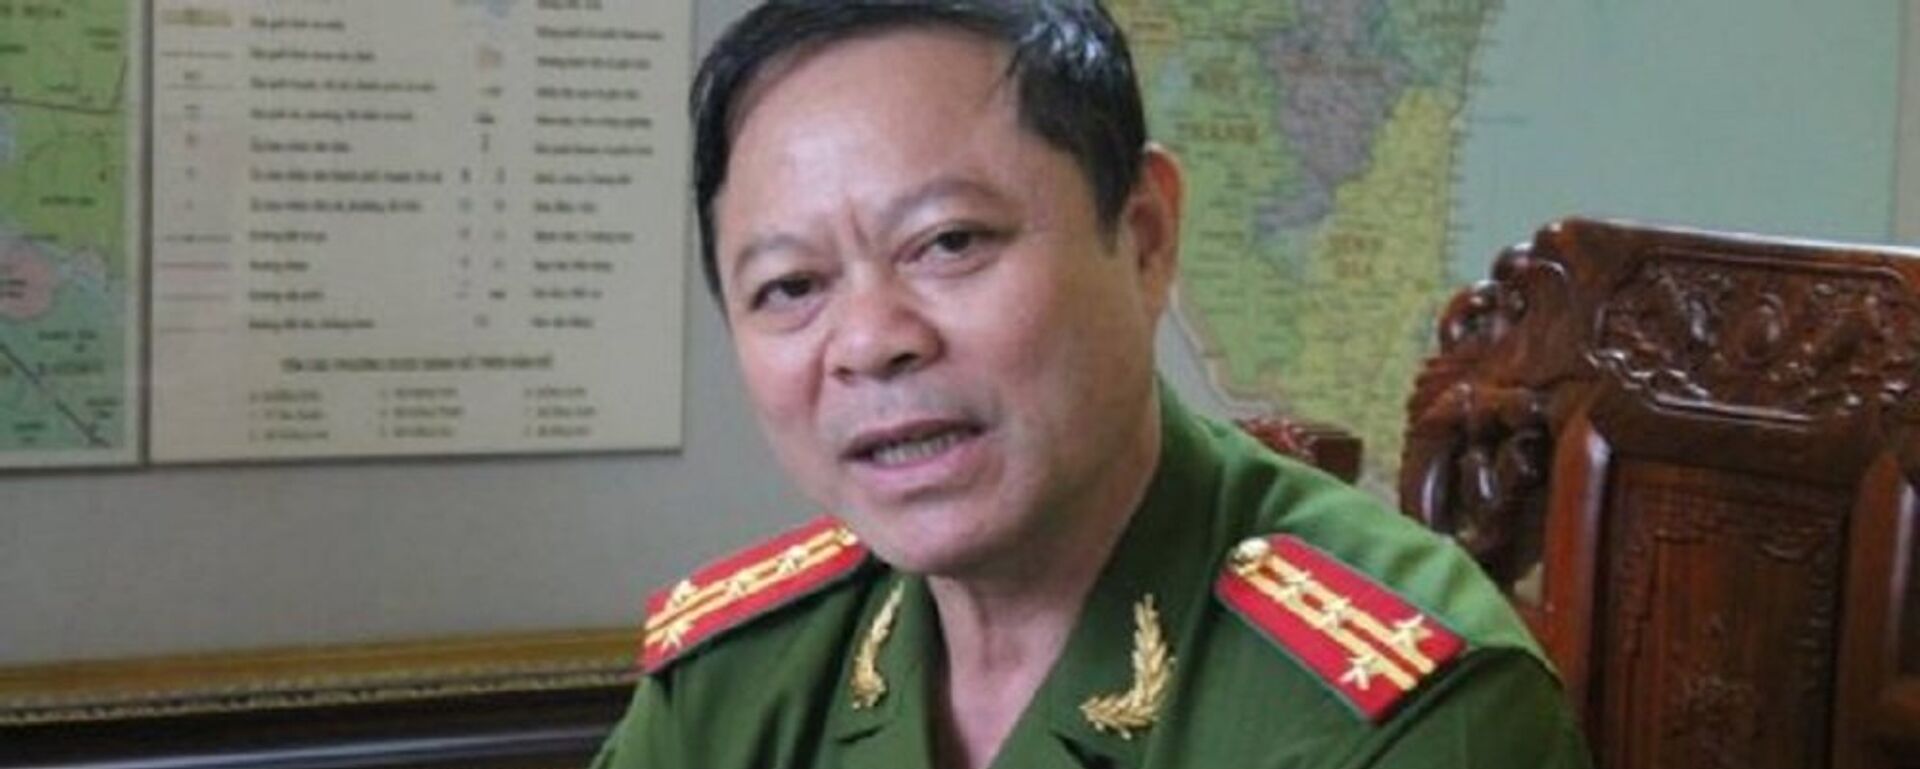 Đại tá Nguyễn Chí Phương - Sputnik Việt Nam, 1920, 25.01.2019